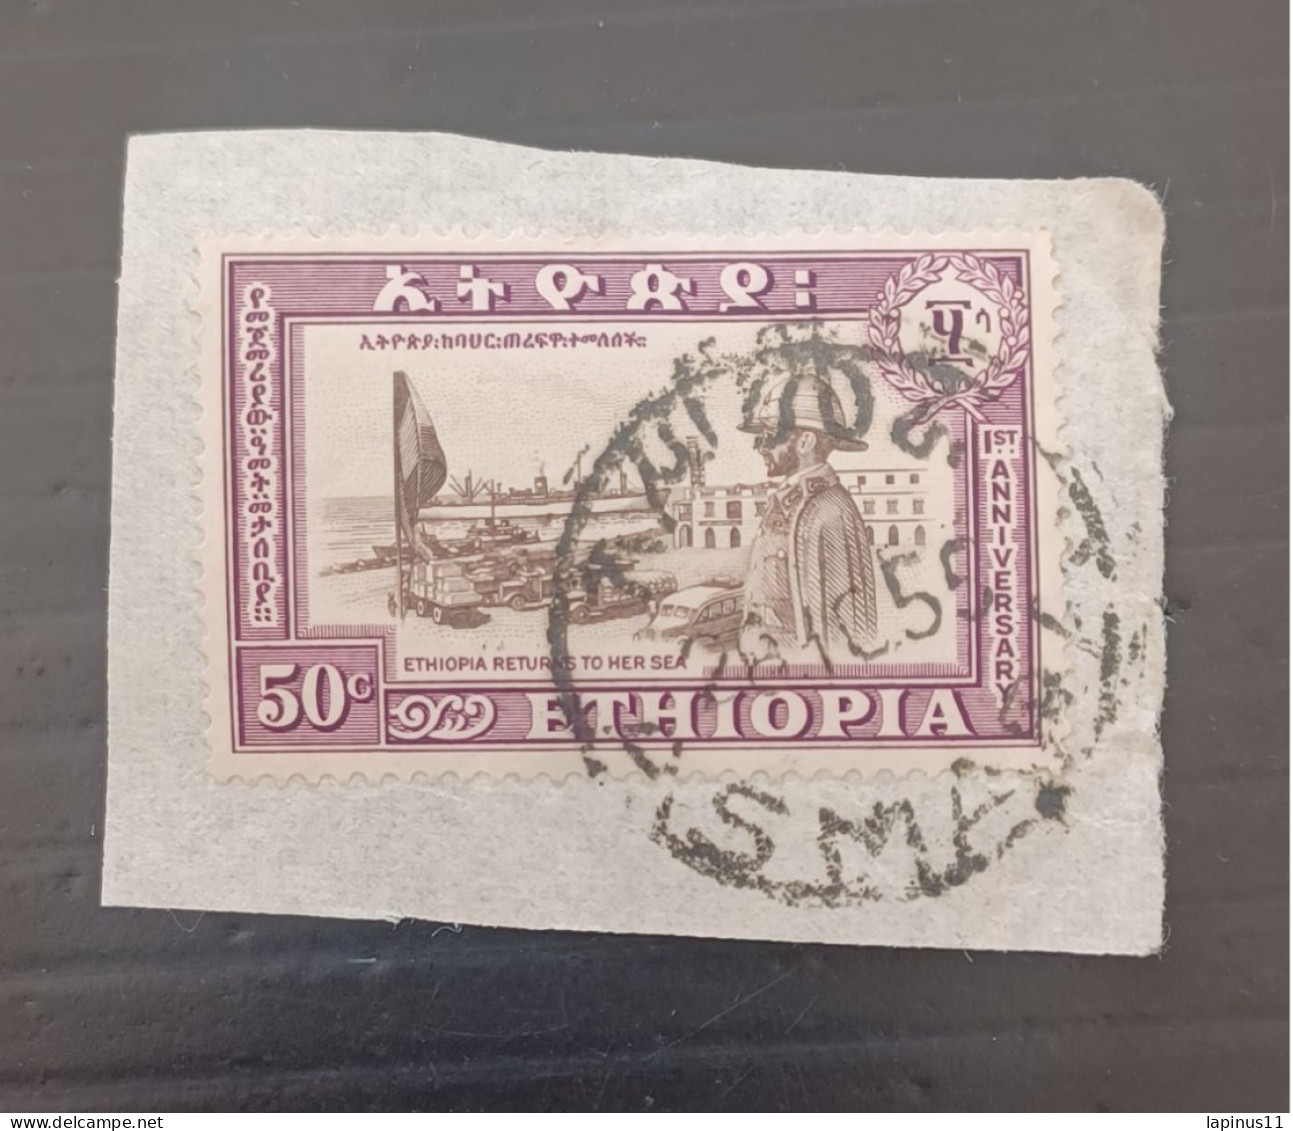 ETIOPIA 1953 ANNIVERSAIRE DU RETOUR DE L ERITREA -PORT DE L ERITREAET LE NEGUS YVERT N 325 - Etiopía